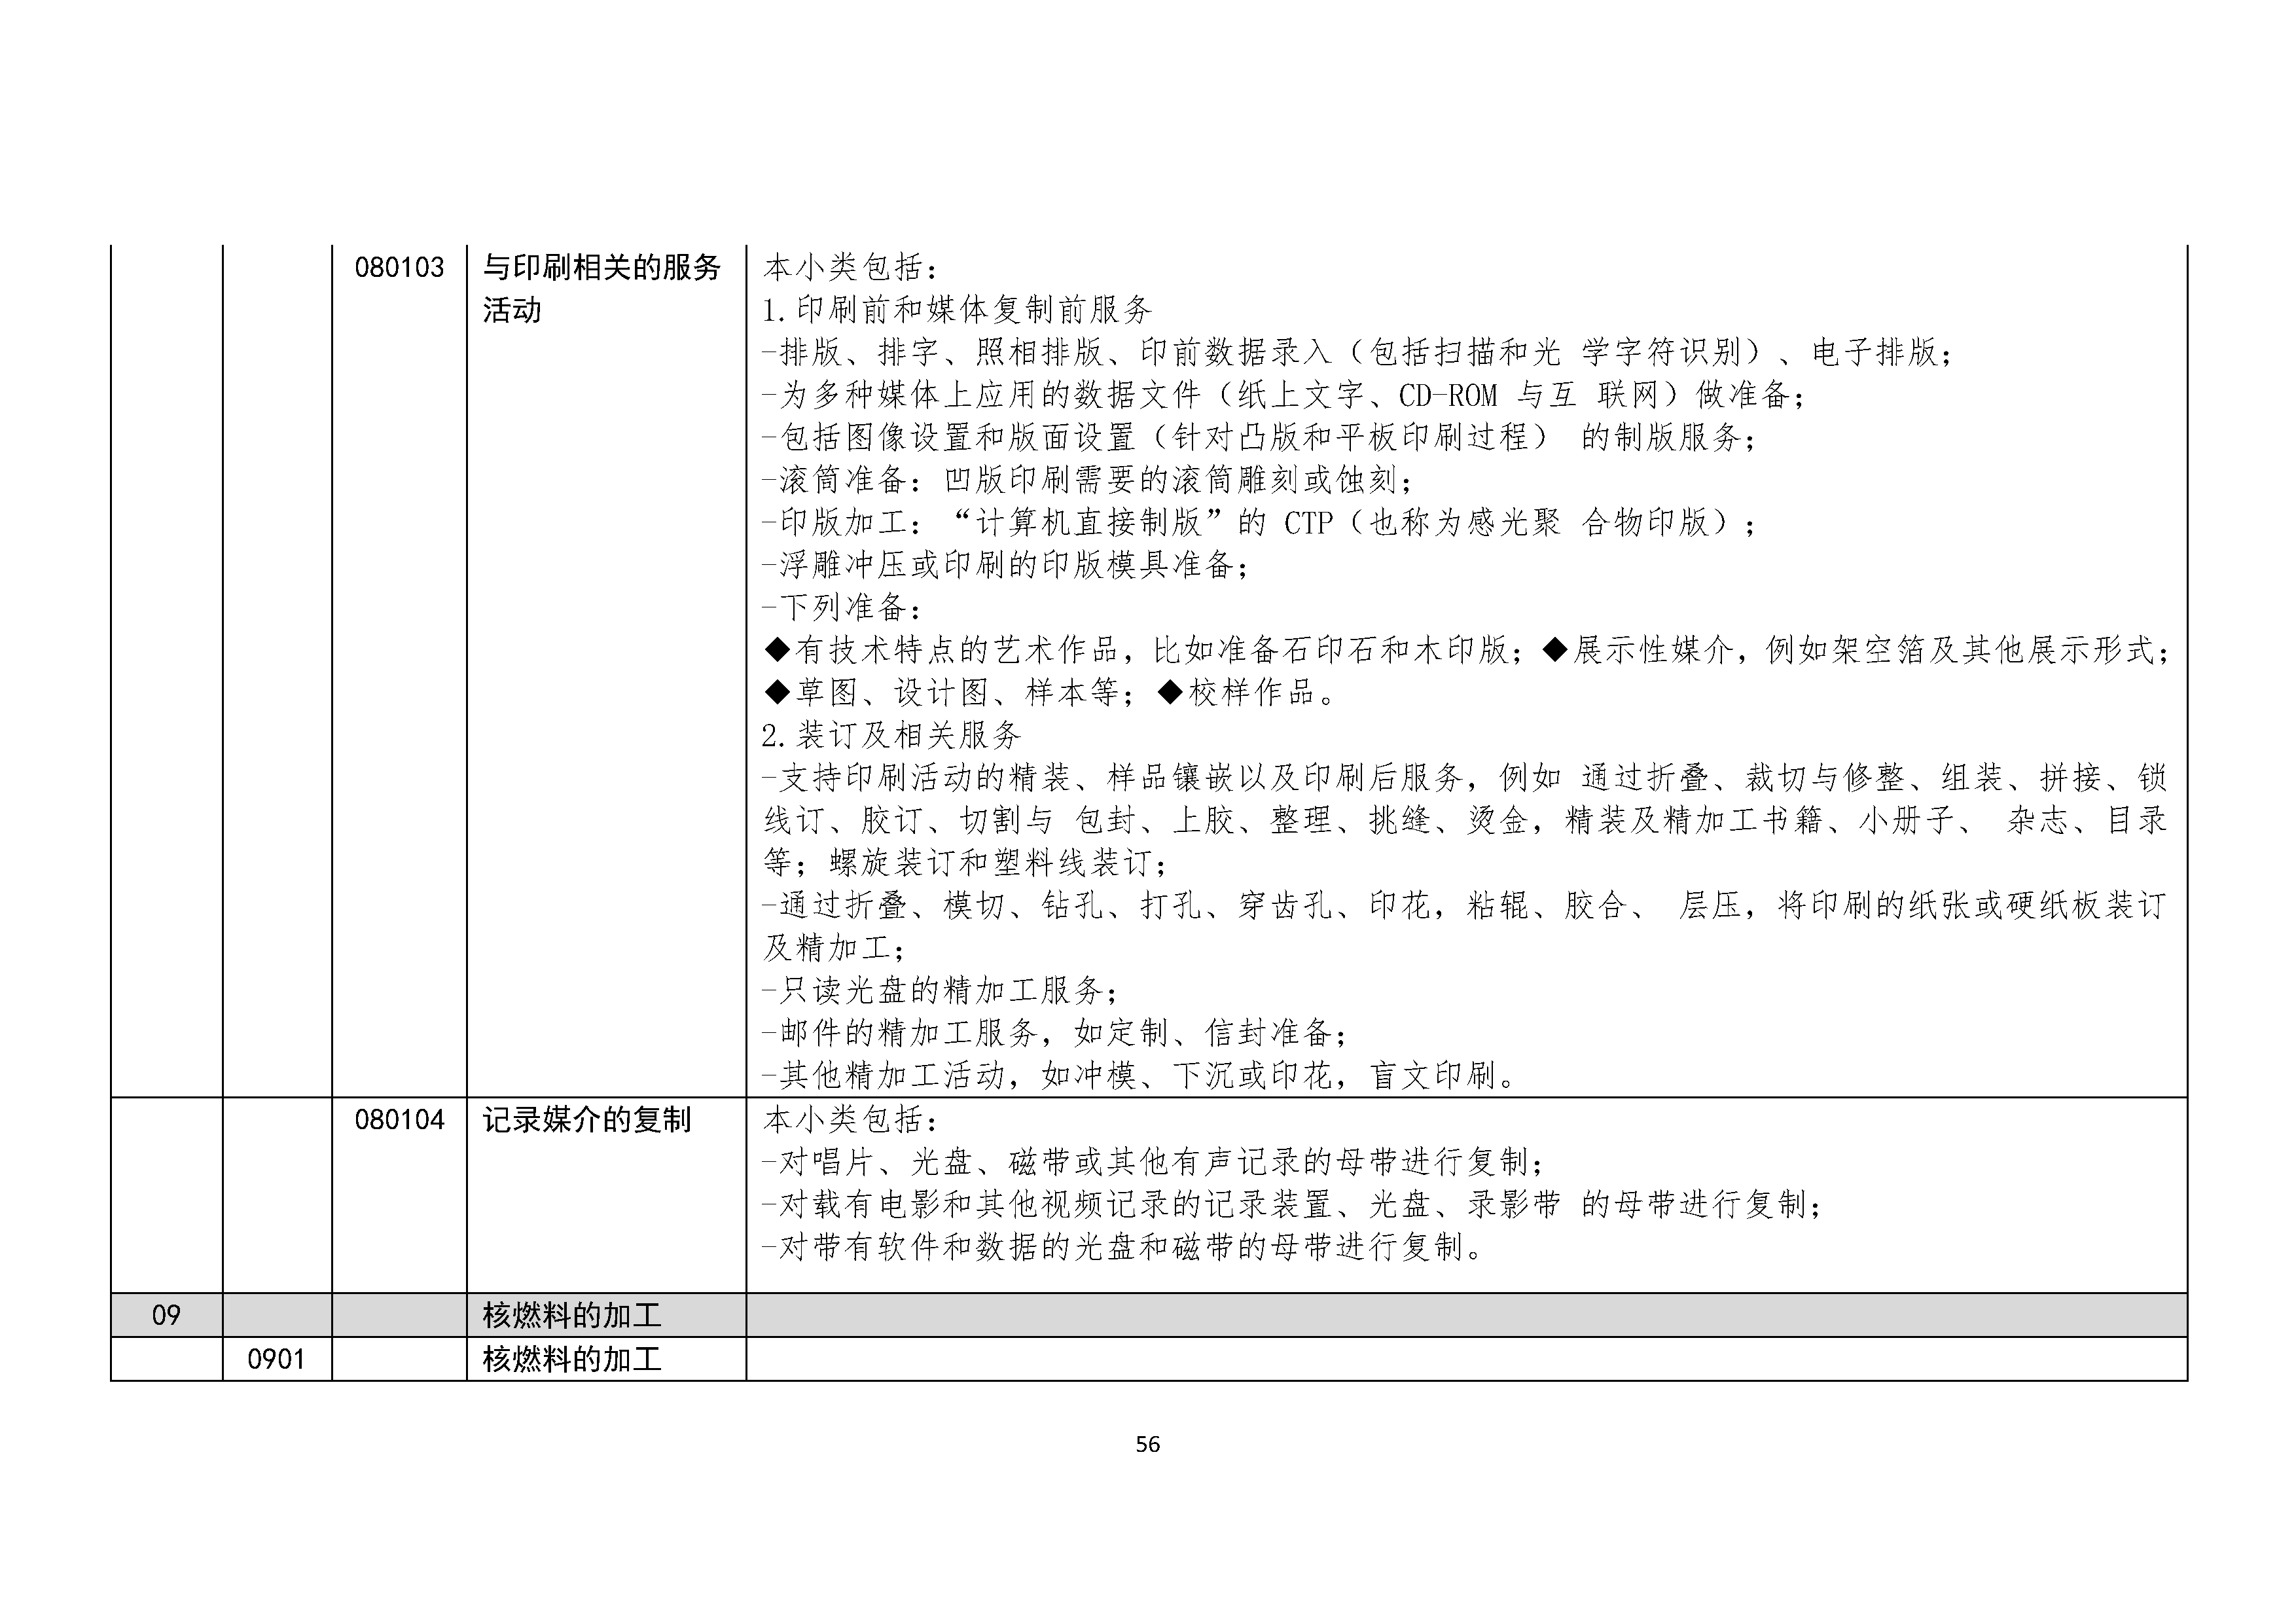 B.6《中国核能行业协会供应商评价供应商分类及产品专业范围划分规定》_页面_057.png